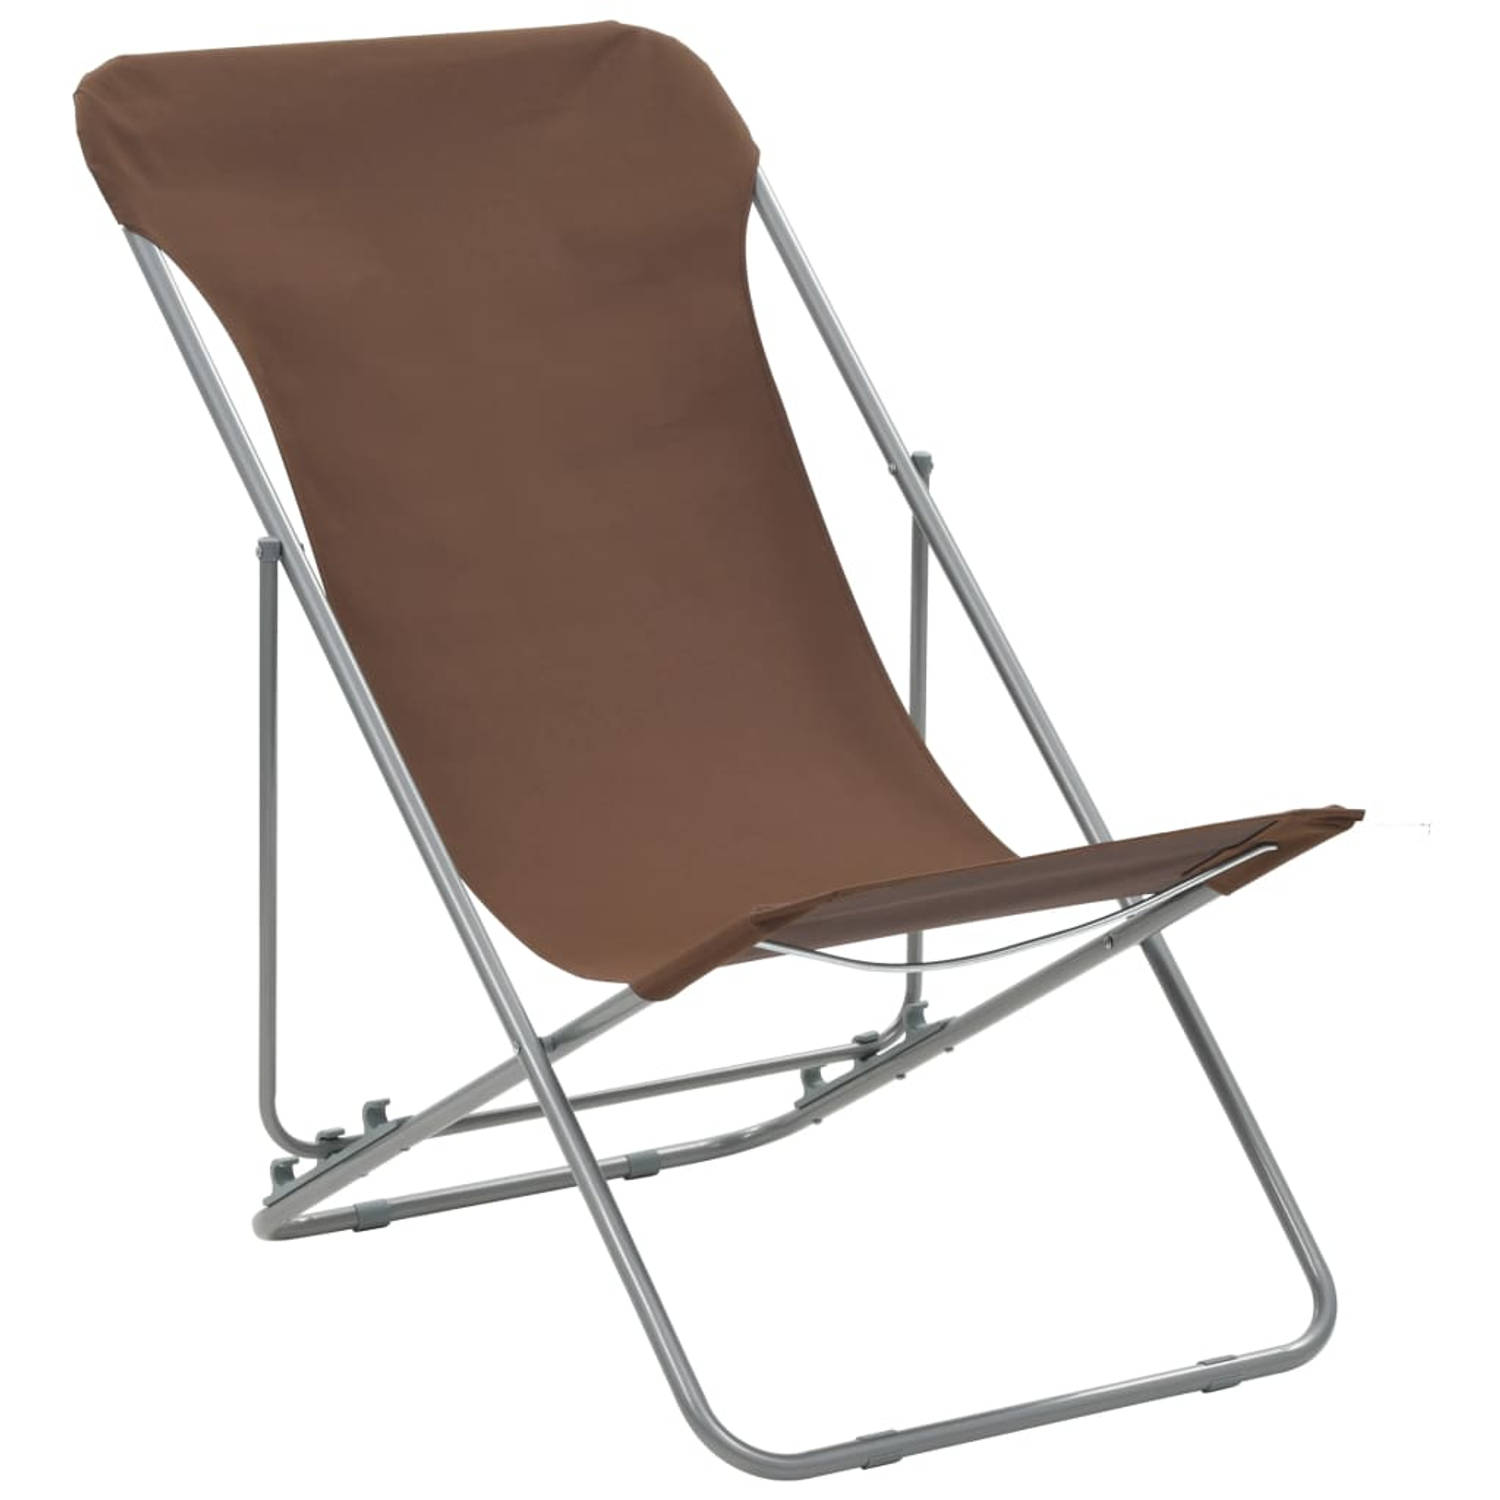 The Living Store Strandstoelenset - Bruin - Gepoedercoat staal - 75 x 57 x 99 cm - Verstelbaar in 3 posities - Inklapbaar - Levering bevat 2 stoelen